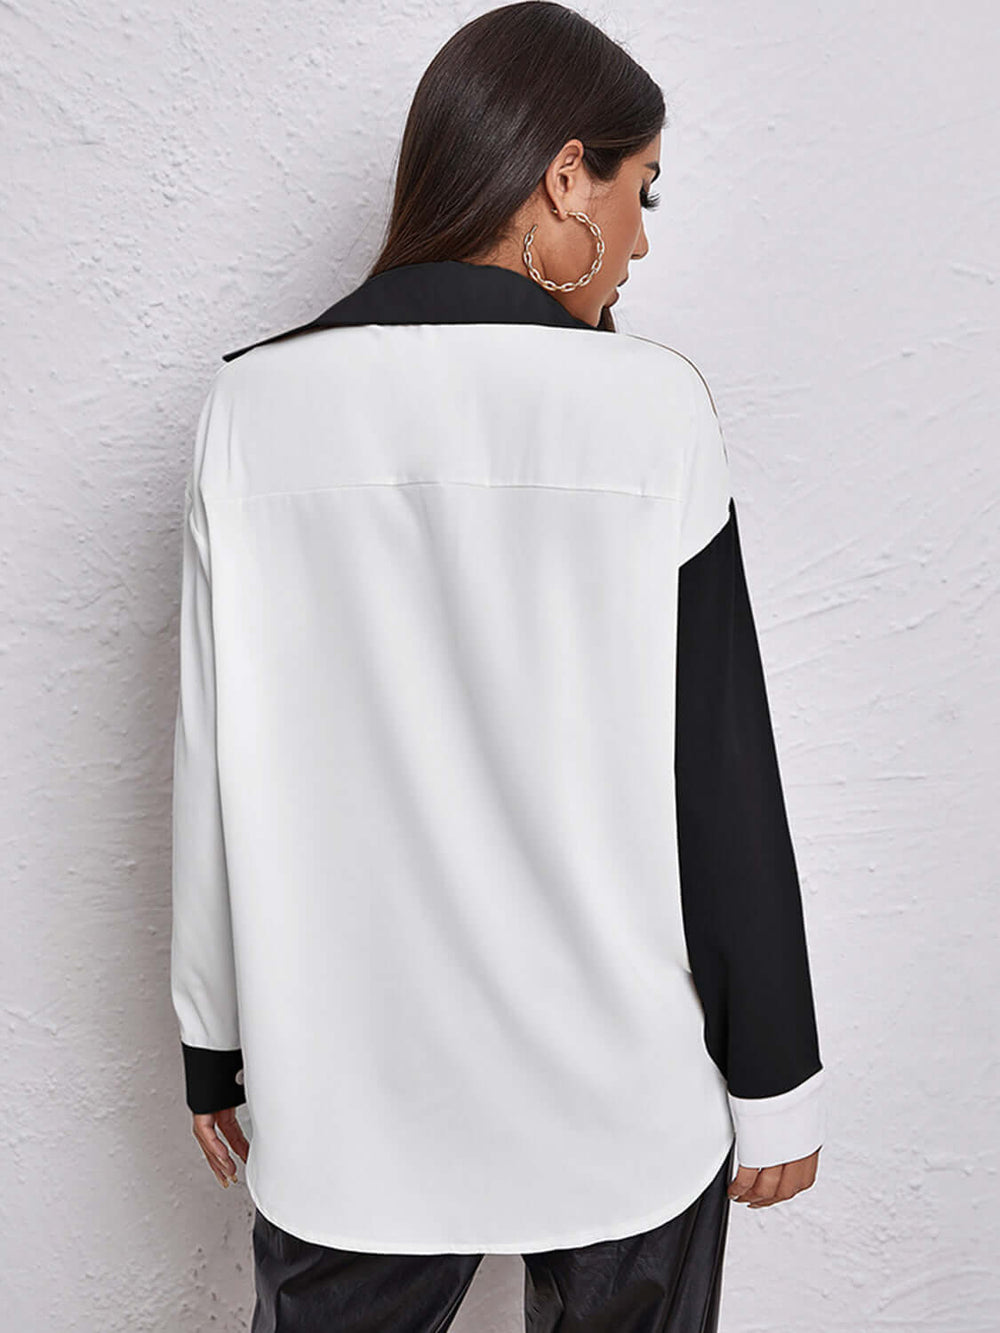 Contrast Dropped Shoulder Long Sleeve Shirt Design